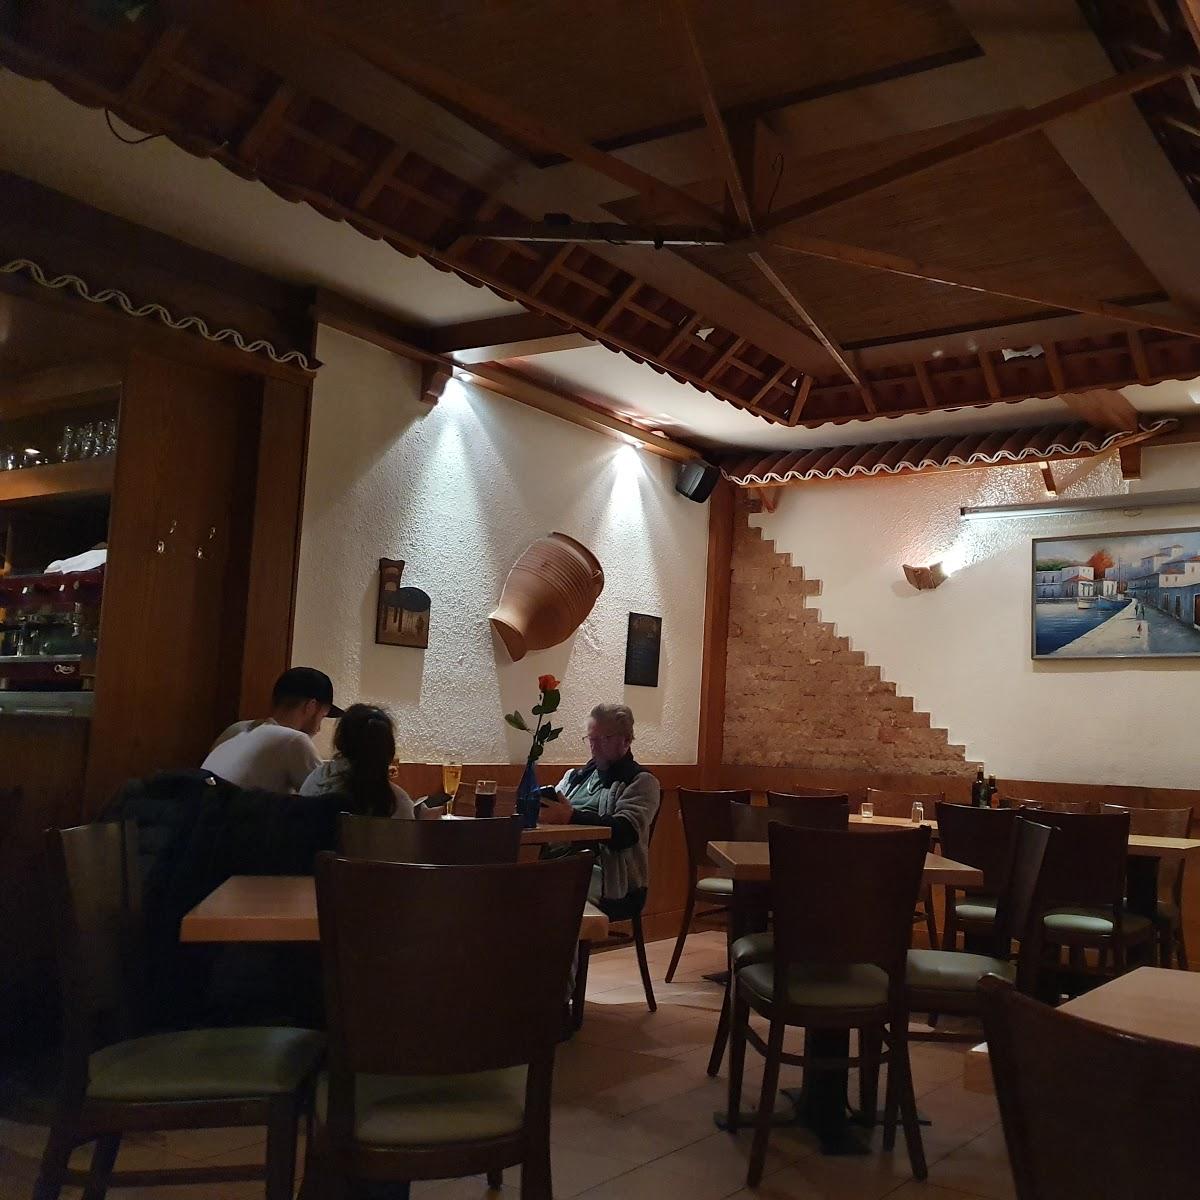 Restaurant "Taverna Jianikos" in Berlin